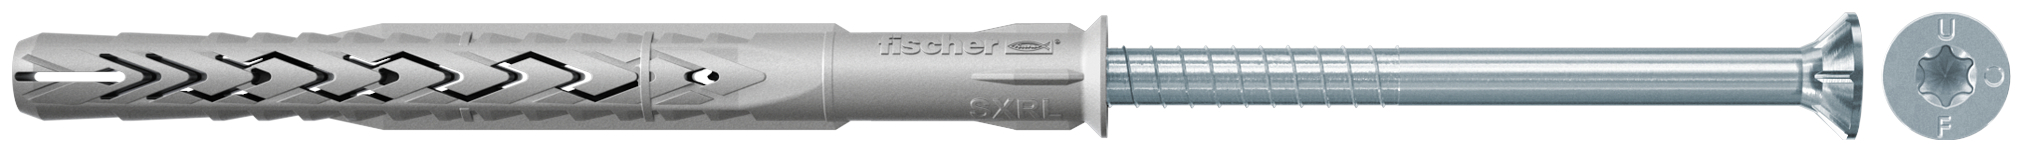 fischer Tasselli prolungati SXRL 14X160 T (1 Pz.) Tassello prolungato in nylon con marcatura CE con vite premontata T.S.P. impronta torx fie2562